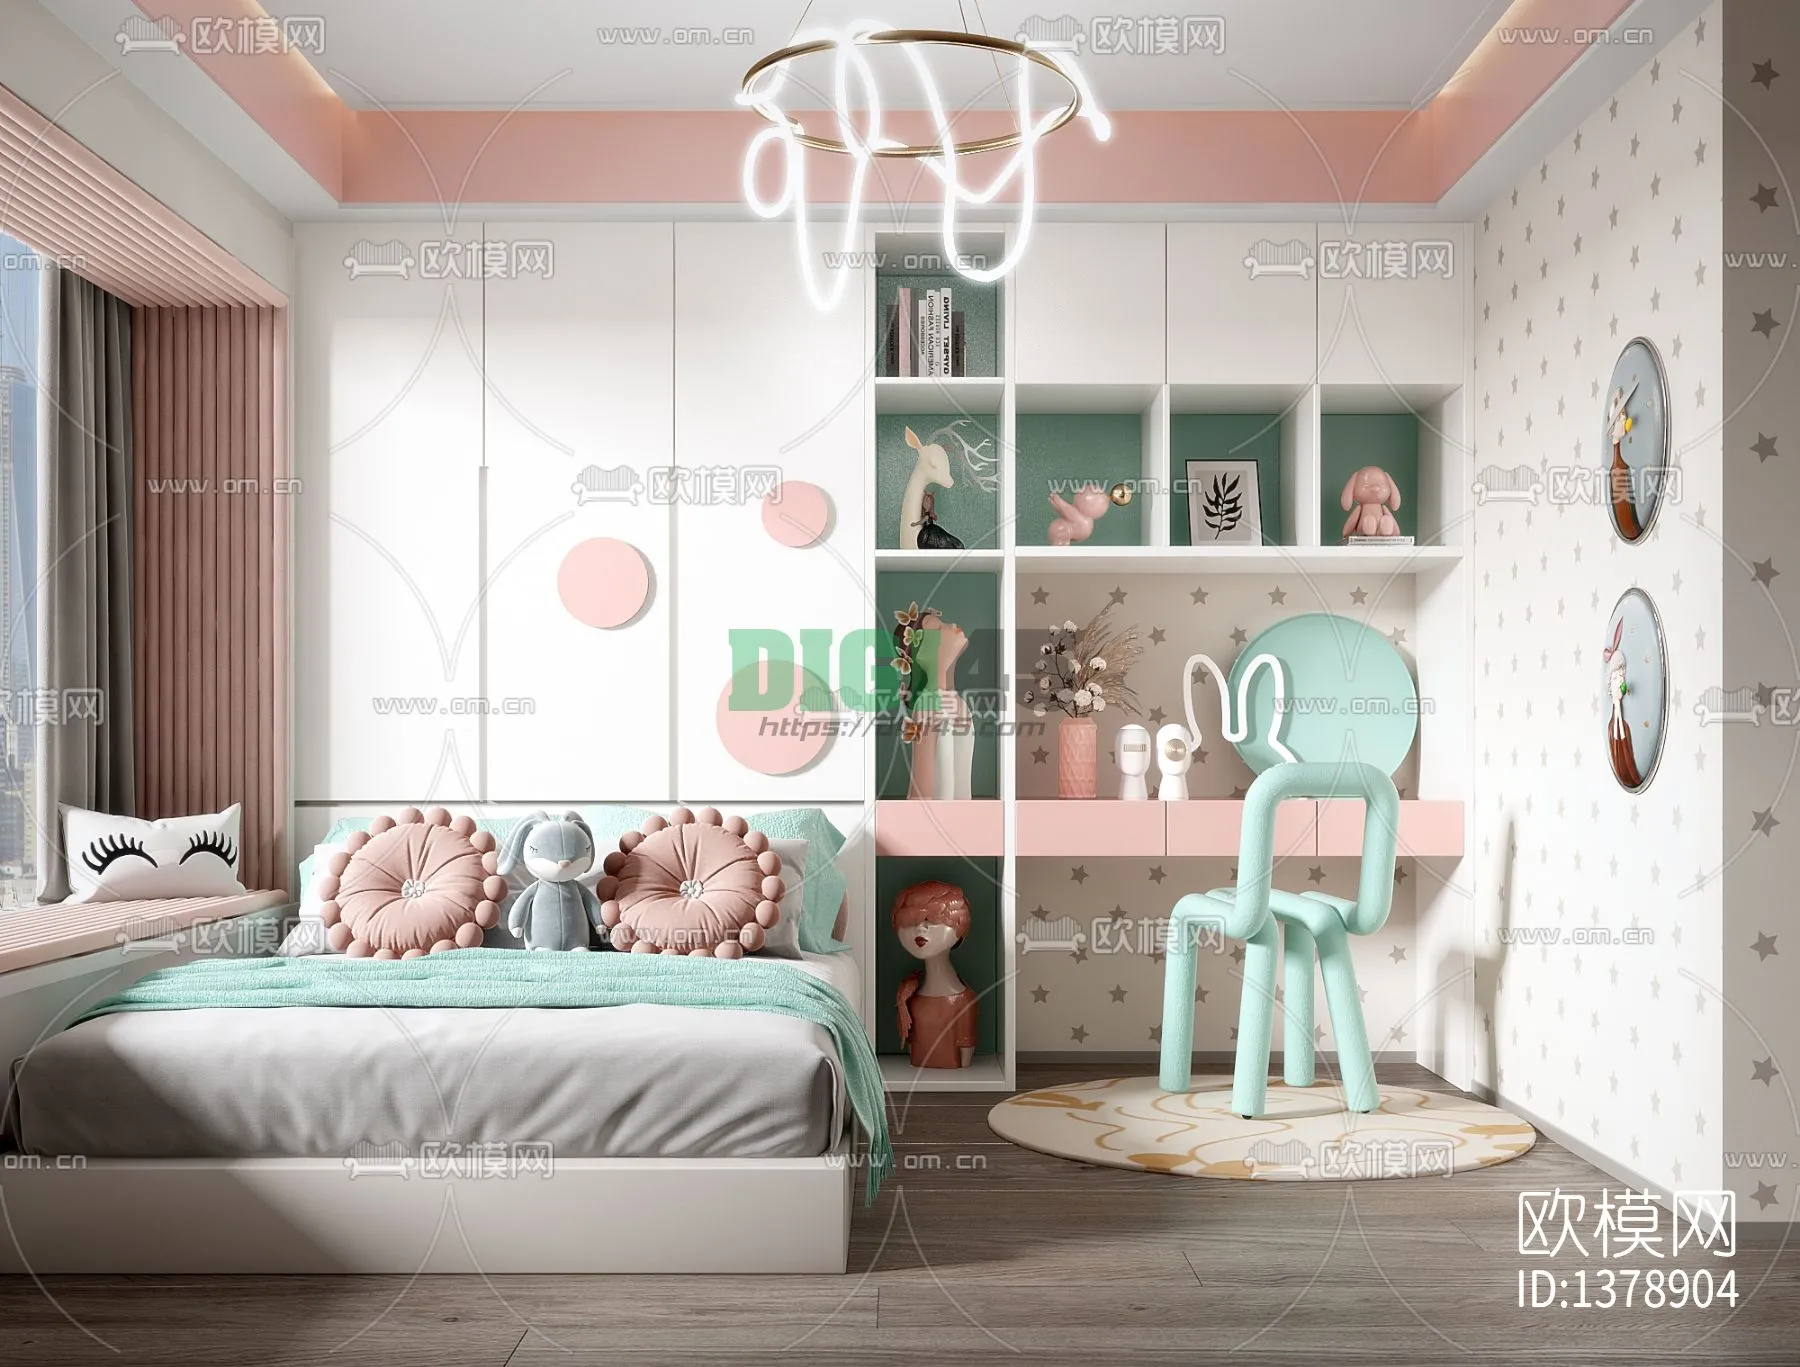 Children Room 3D Scenes – 1183